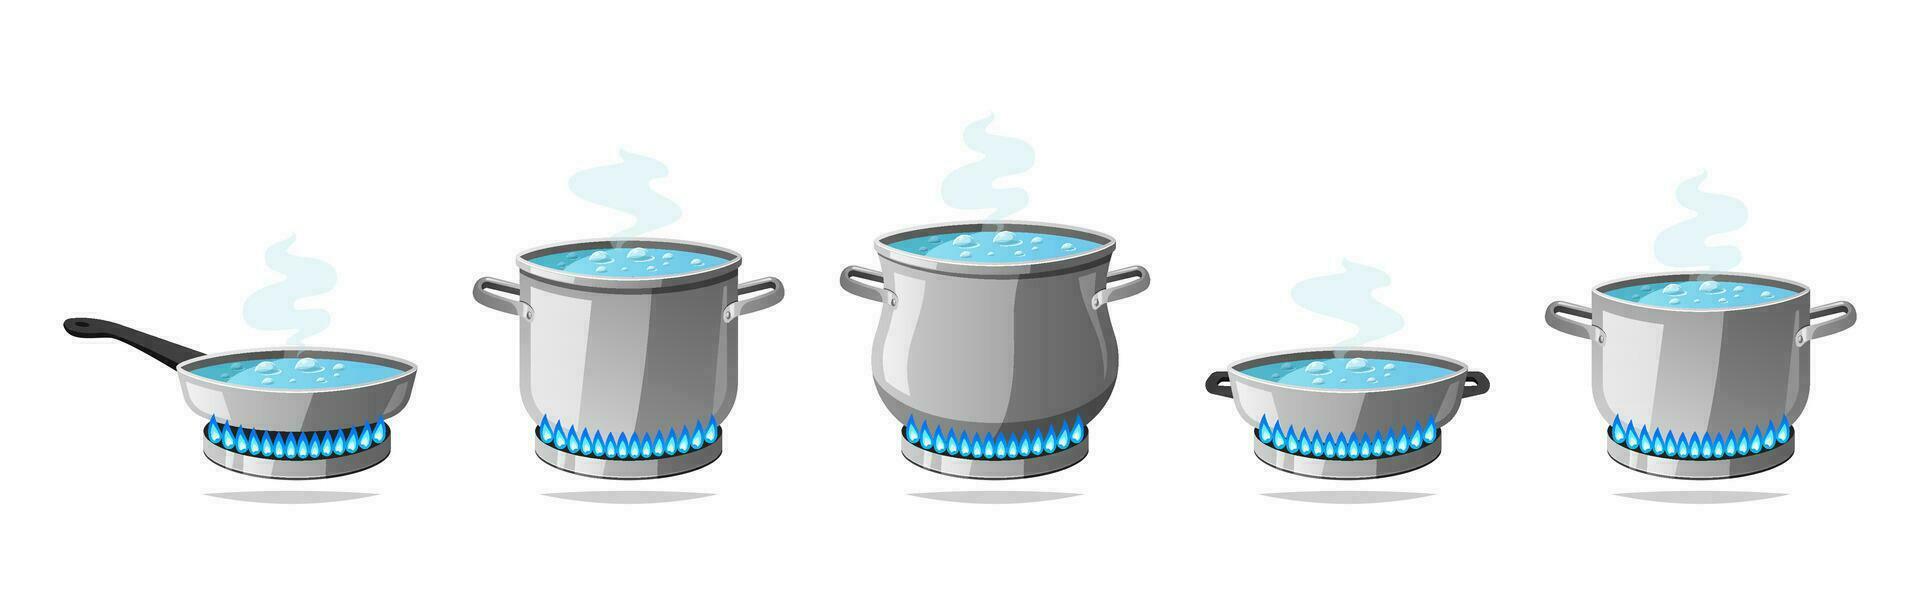 Kochen Küche Töpfe. Kochen Sieden Wasser auf ein Gas Herd. vektor